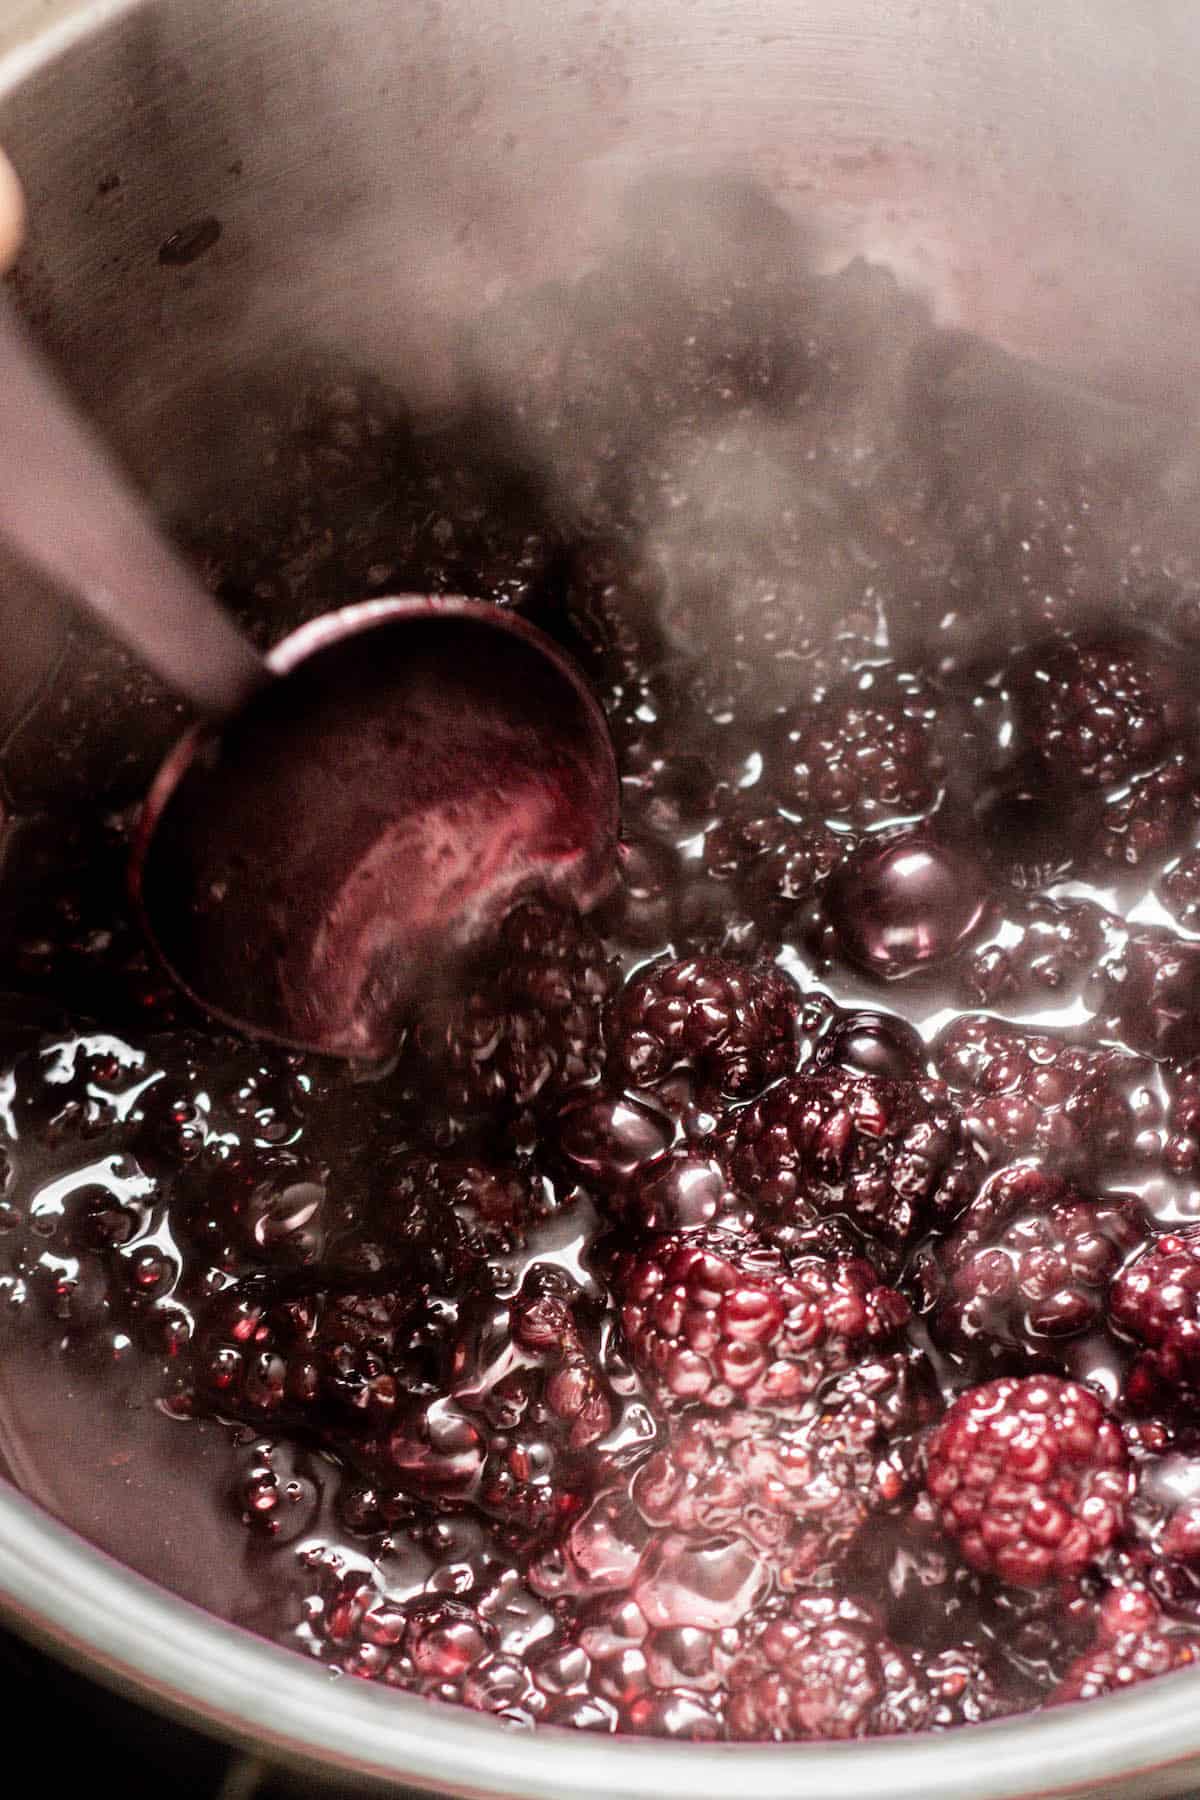 spoon stirring berries.